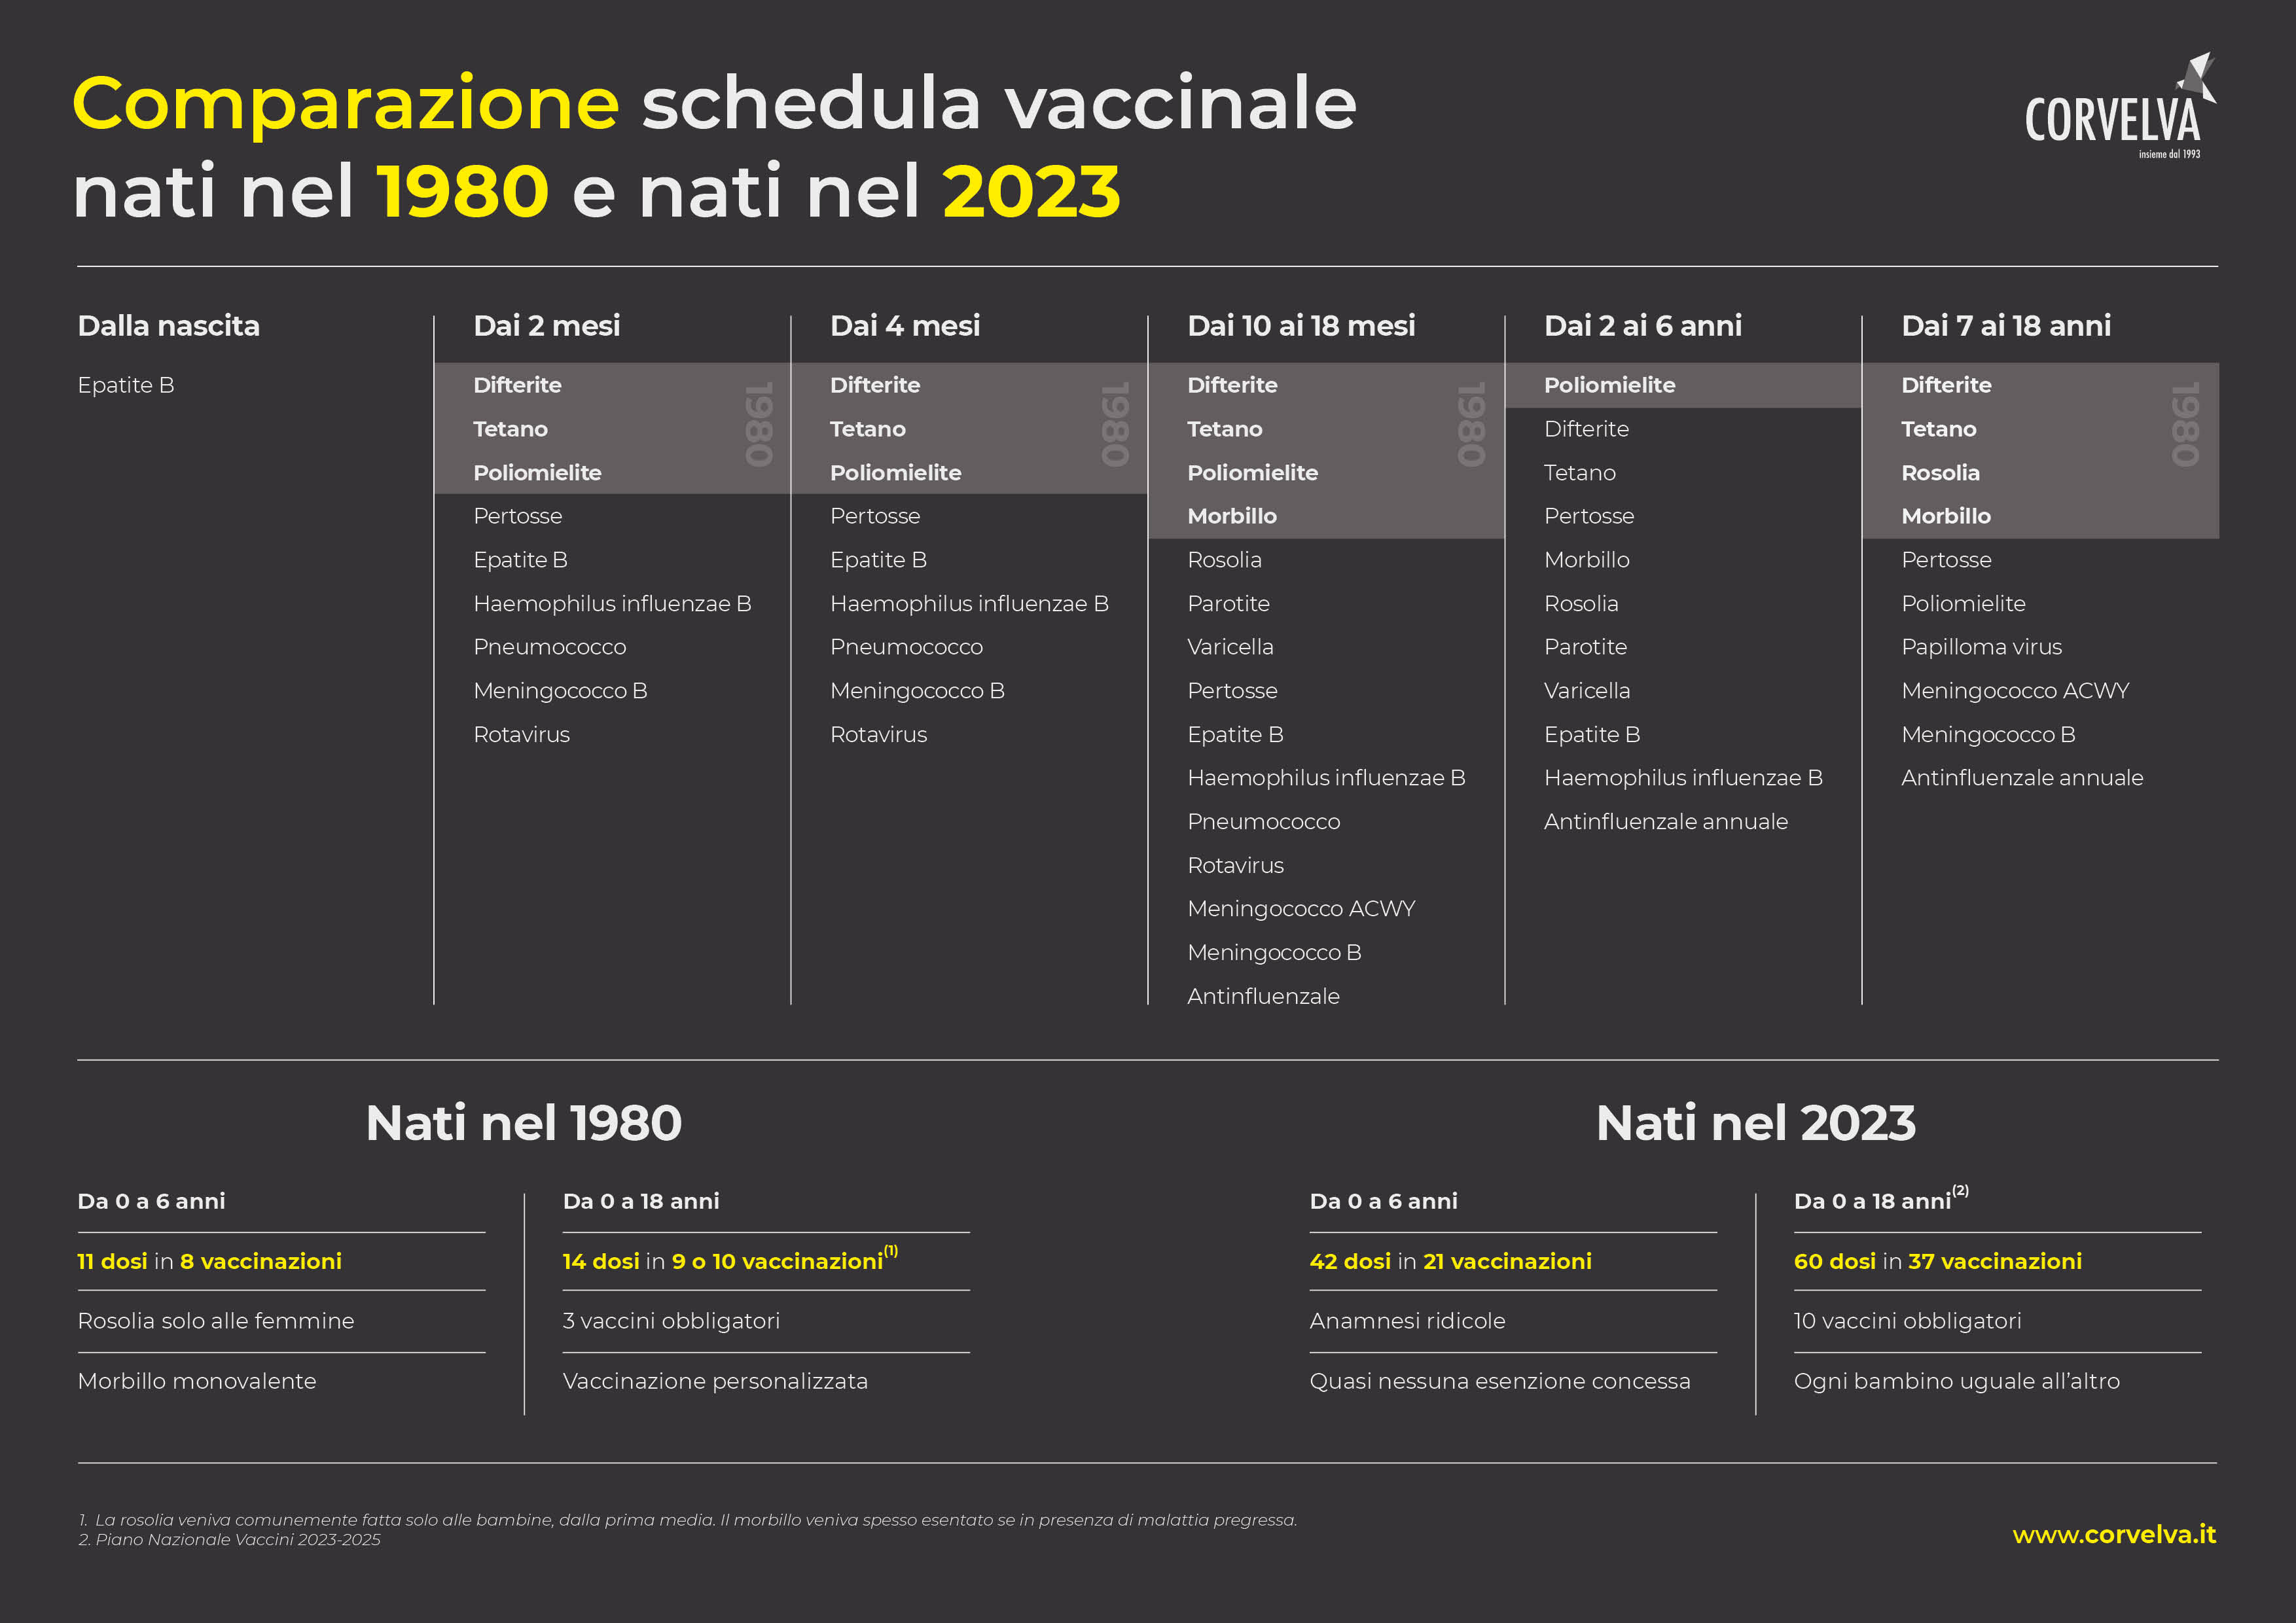 Vergleich der Impfpläne der Jahrgänge 1980 und 2023